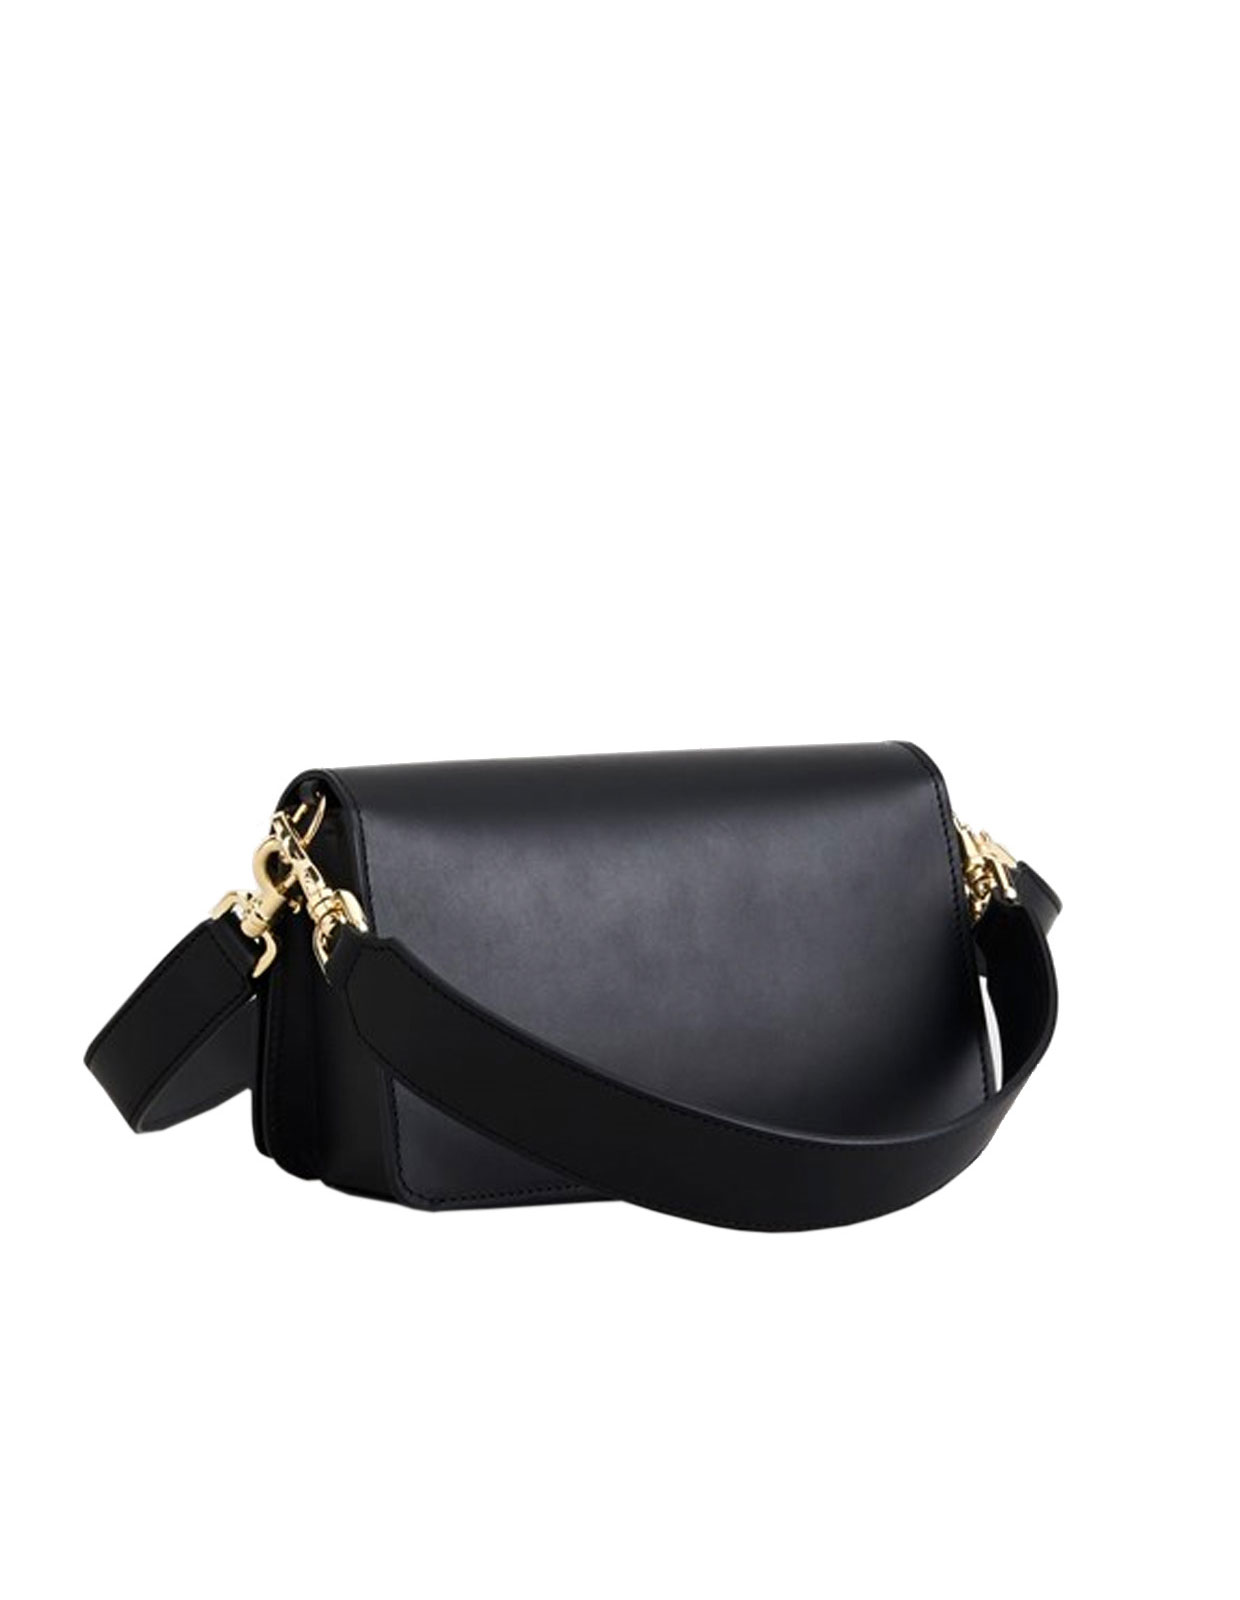 Assisi Baguette Bag Black